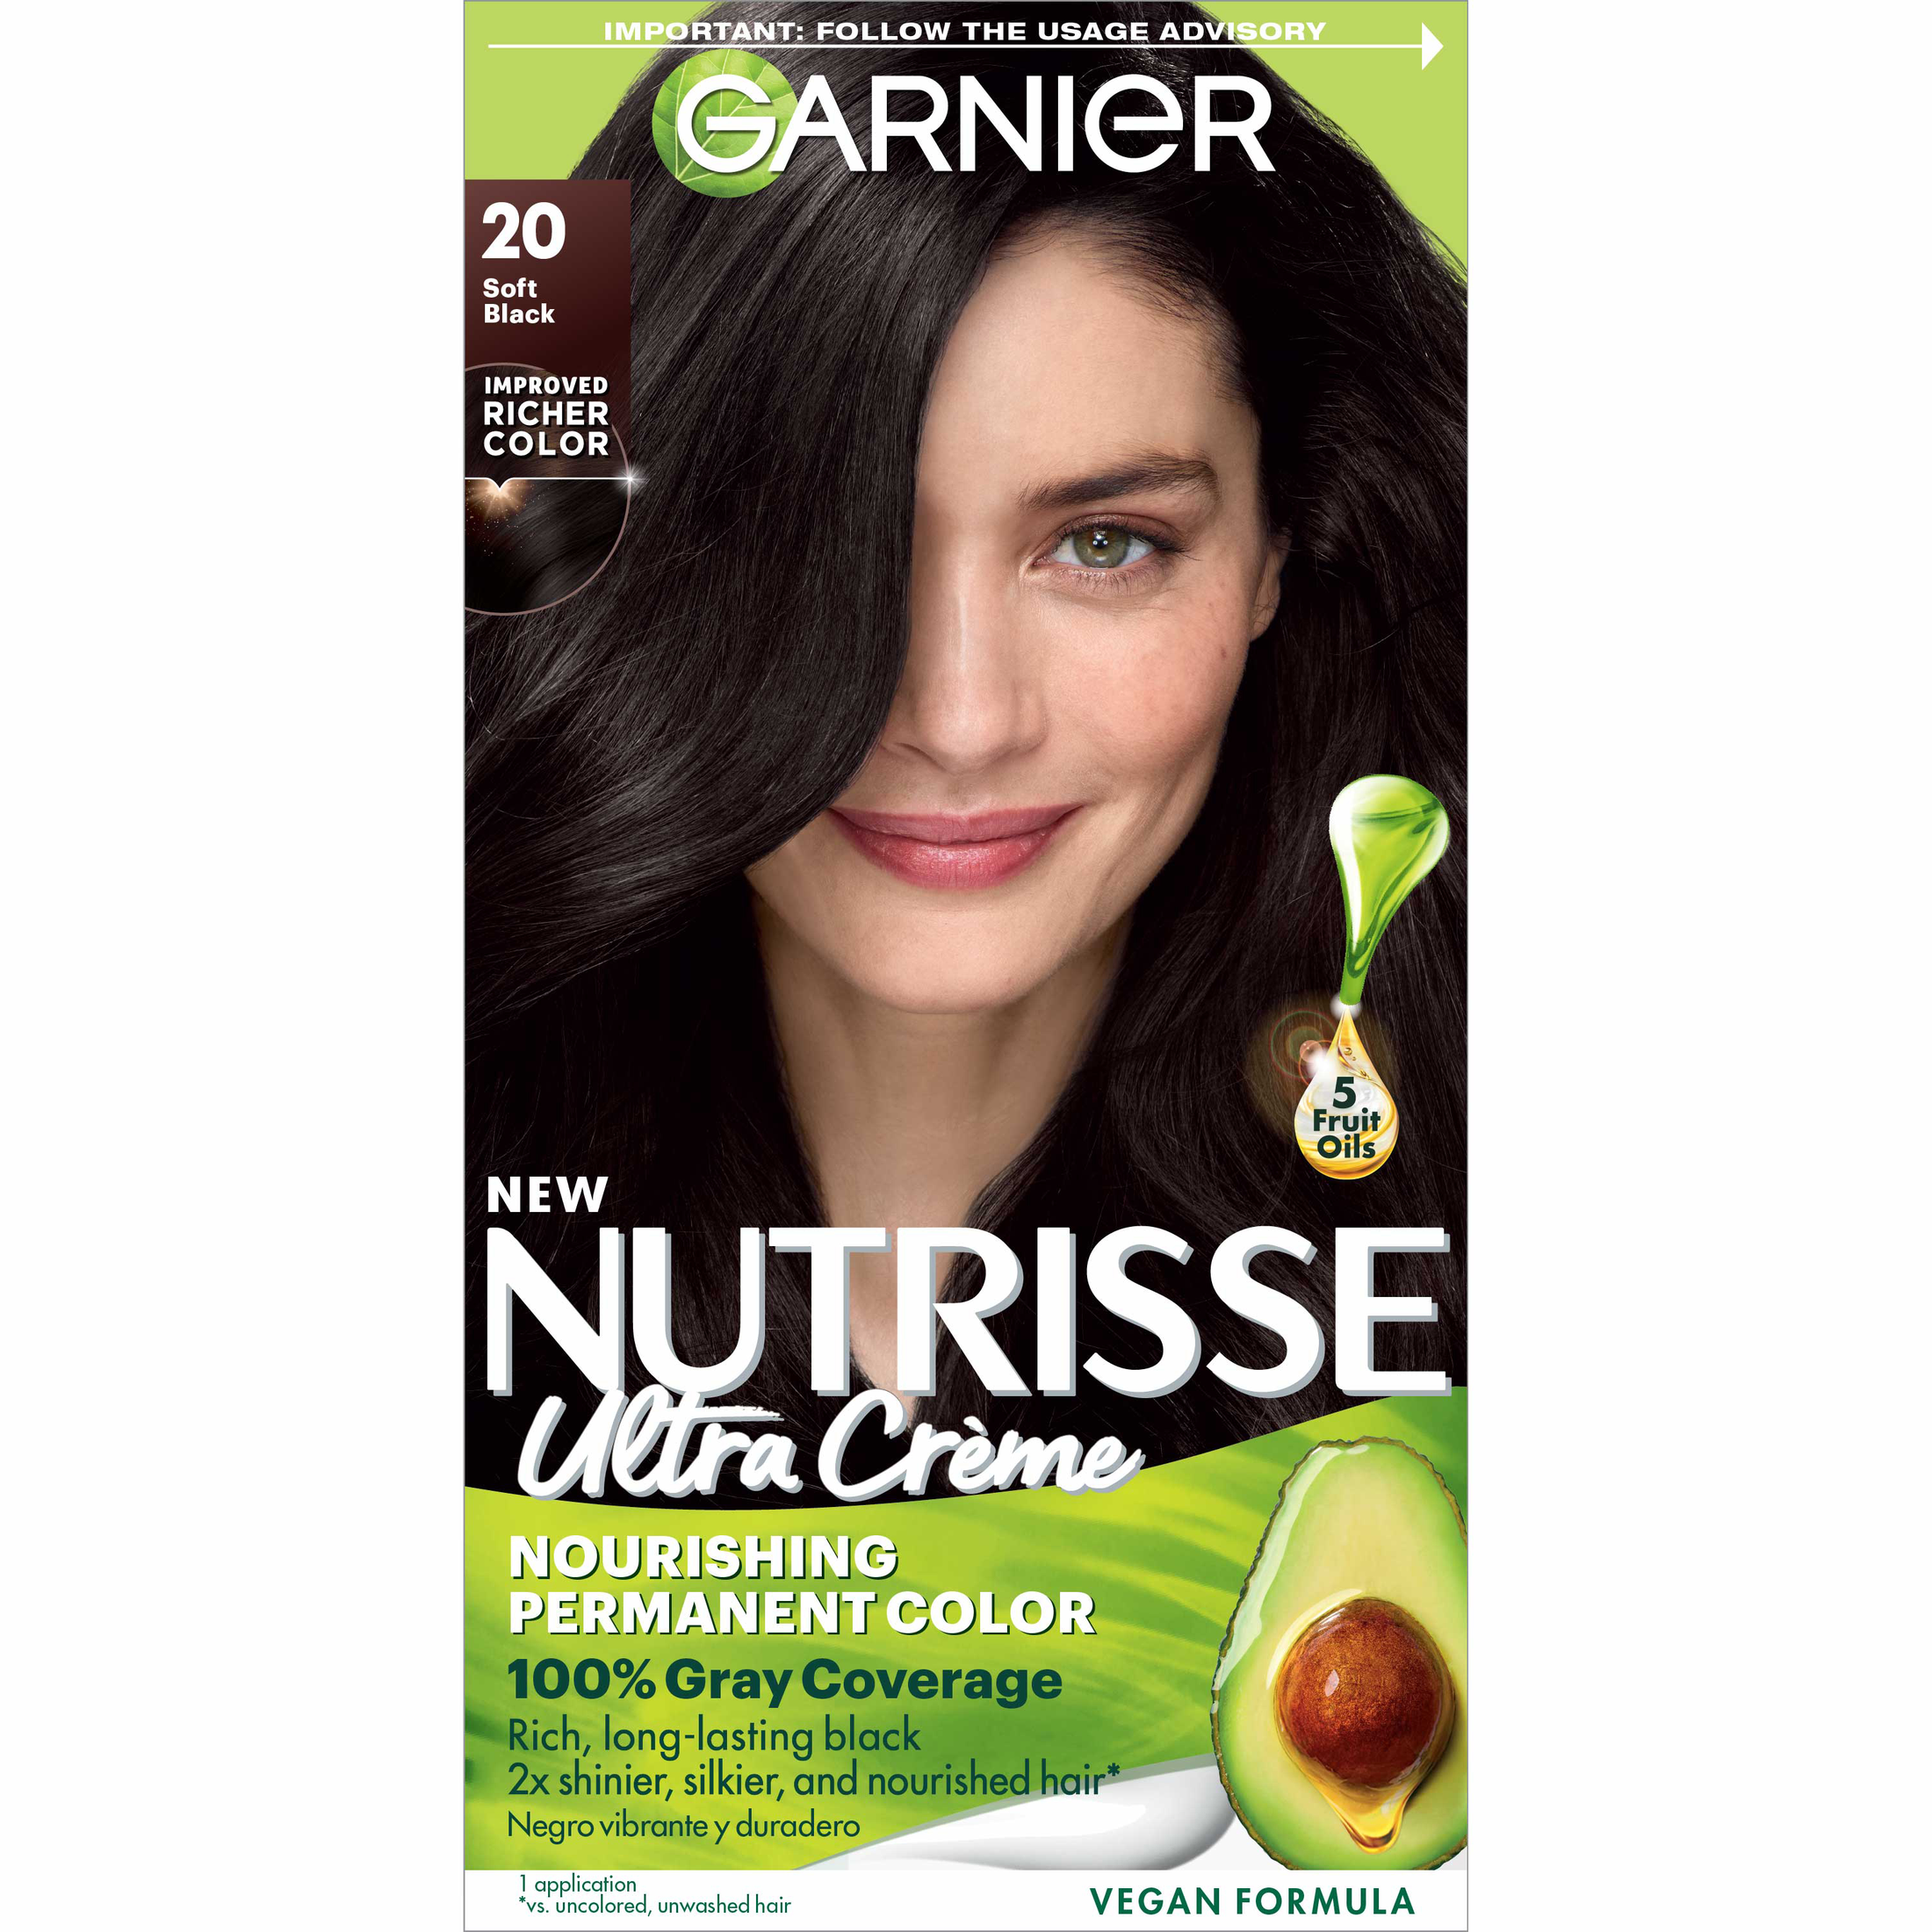 Garnier Nutrisse Nourishing Hair Color Creme, 020 Soft Black Tea - image 1 of 10